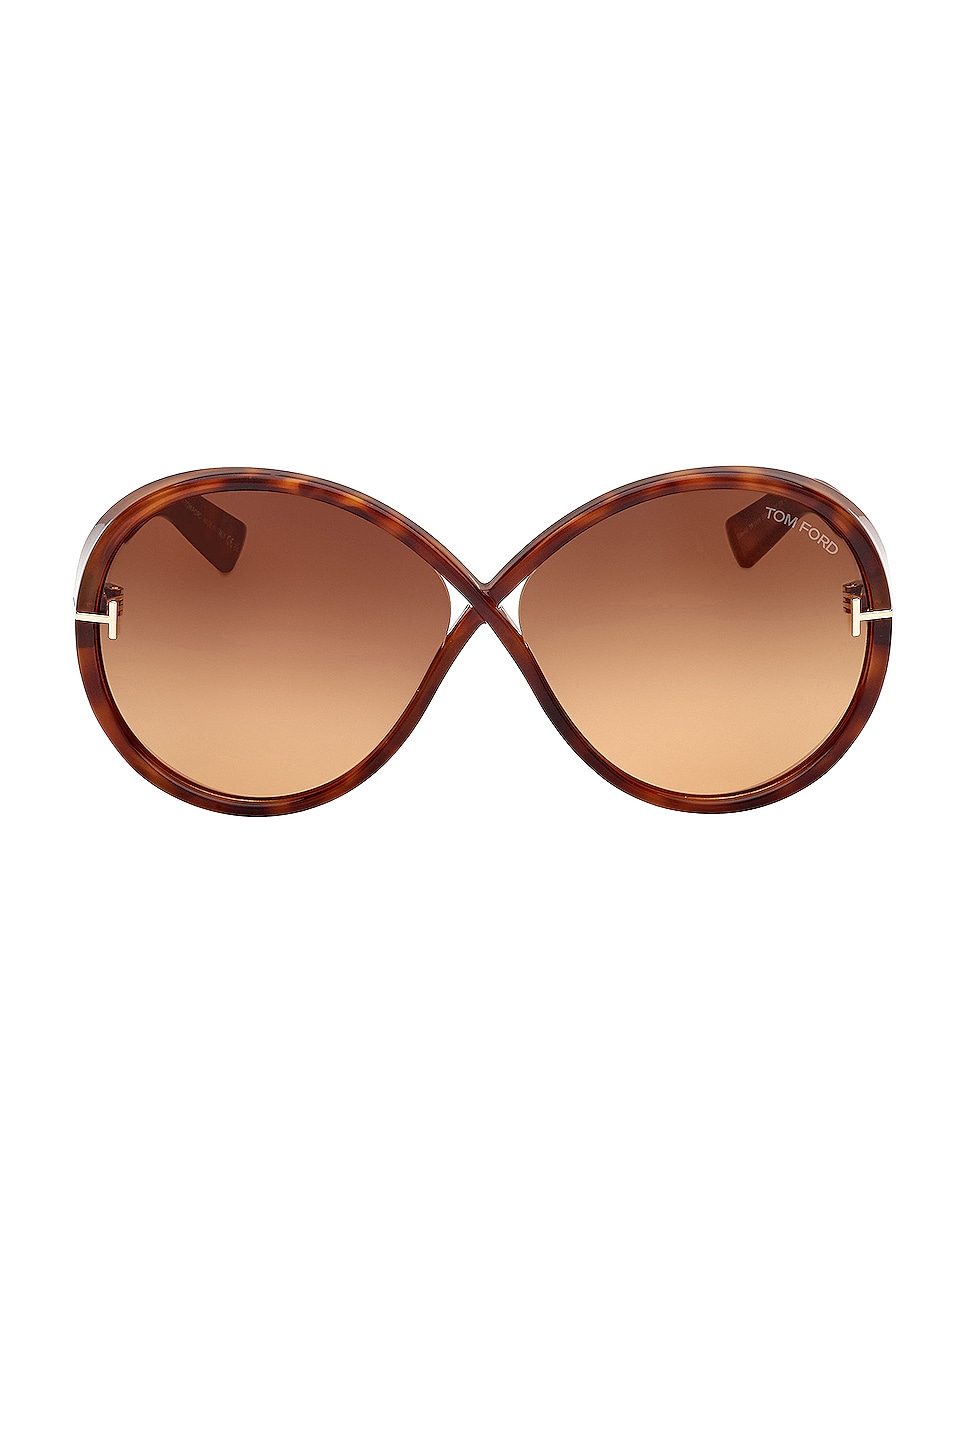 Edie Sunglasses in Brown